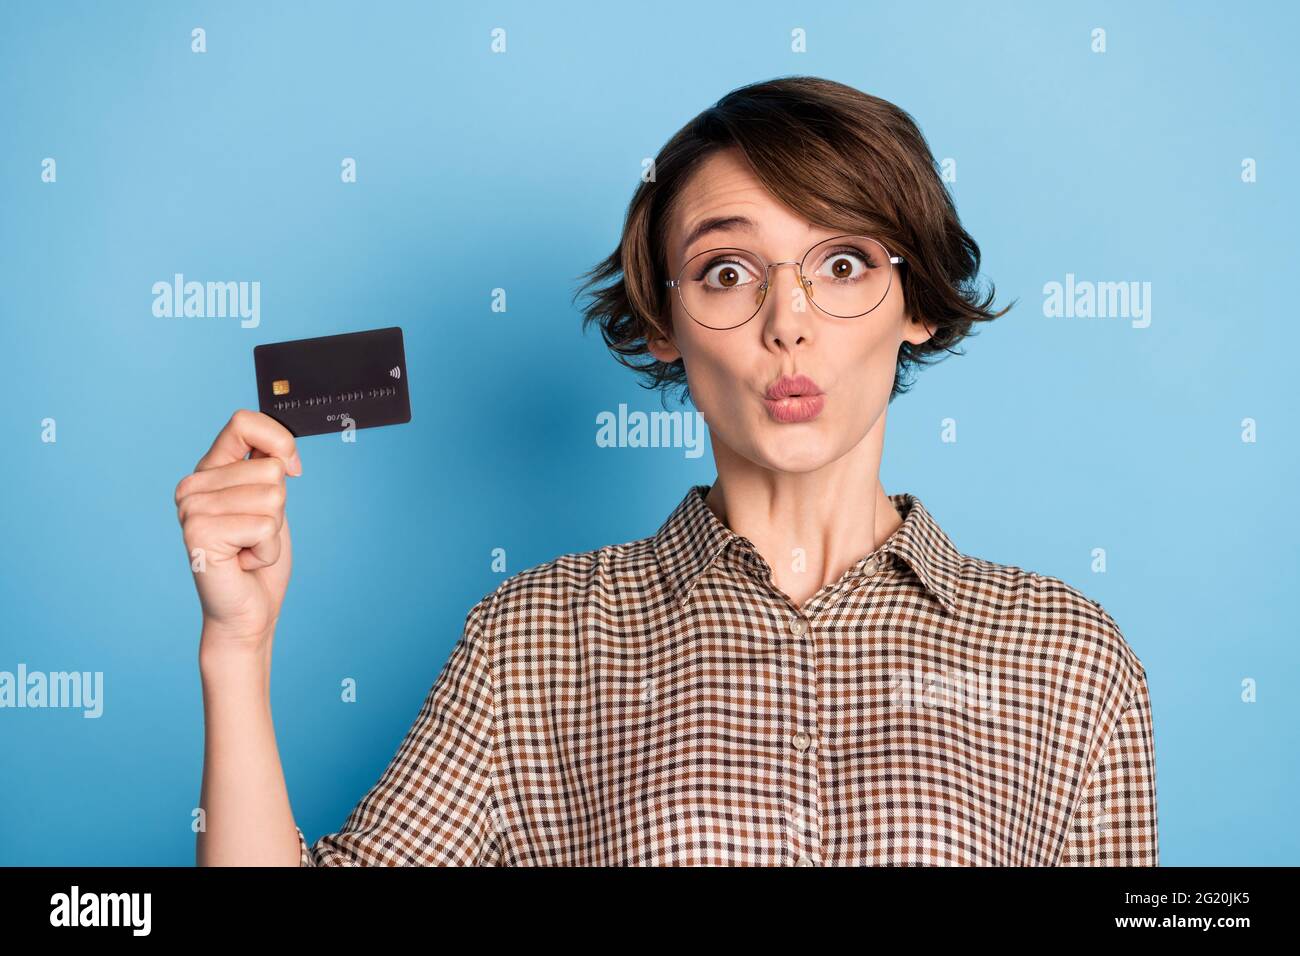 Portrait de la personne choquée main tenir carte de débit regarder l'appareil photo porter damier isolé sur fond bleu Banque D'Images